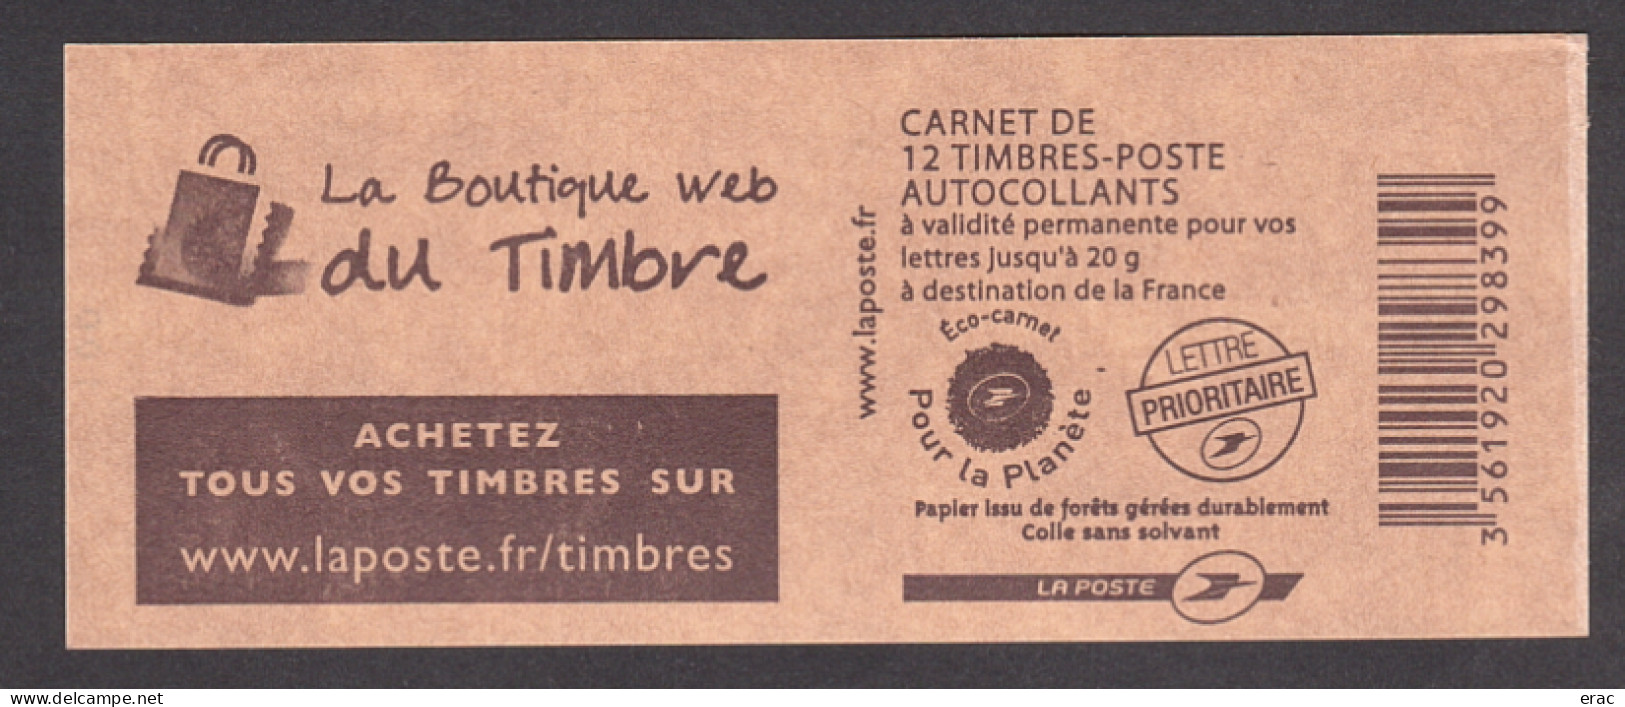 France - Carnet Autoadhésif 4197-C6 Daté 07.01.09 - N° Liasse : 100 - Neuf ** - Marianne De Beaujard - La Boutique Web - Carnets